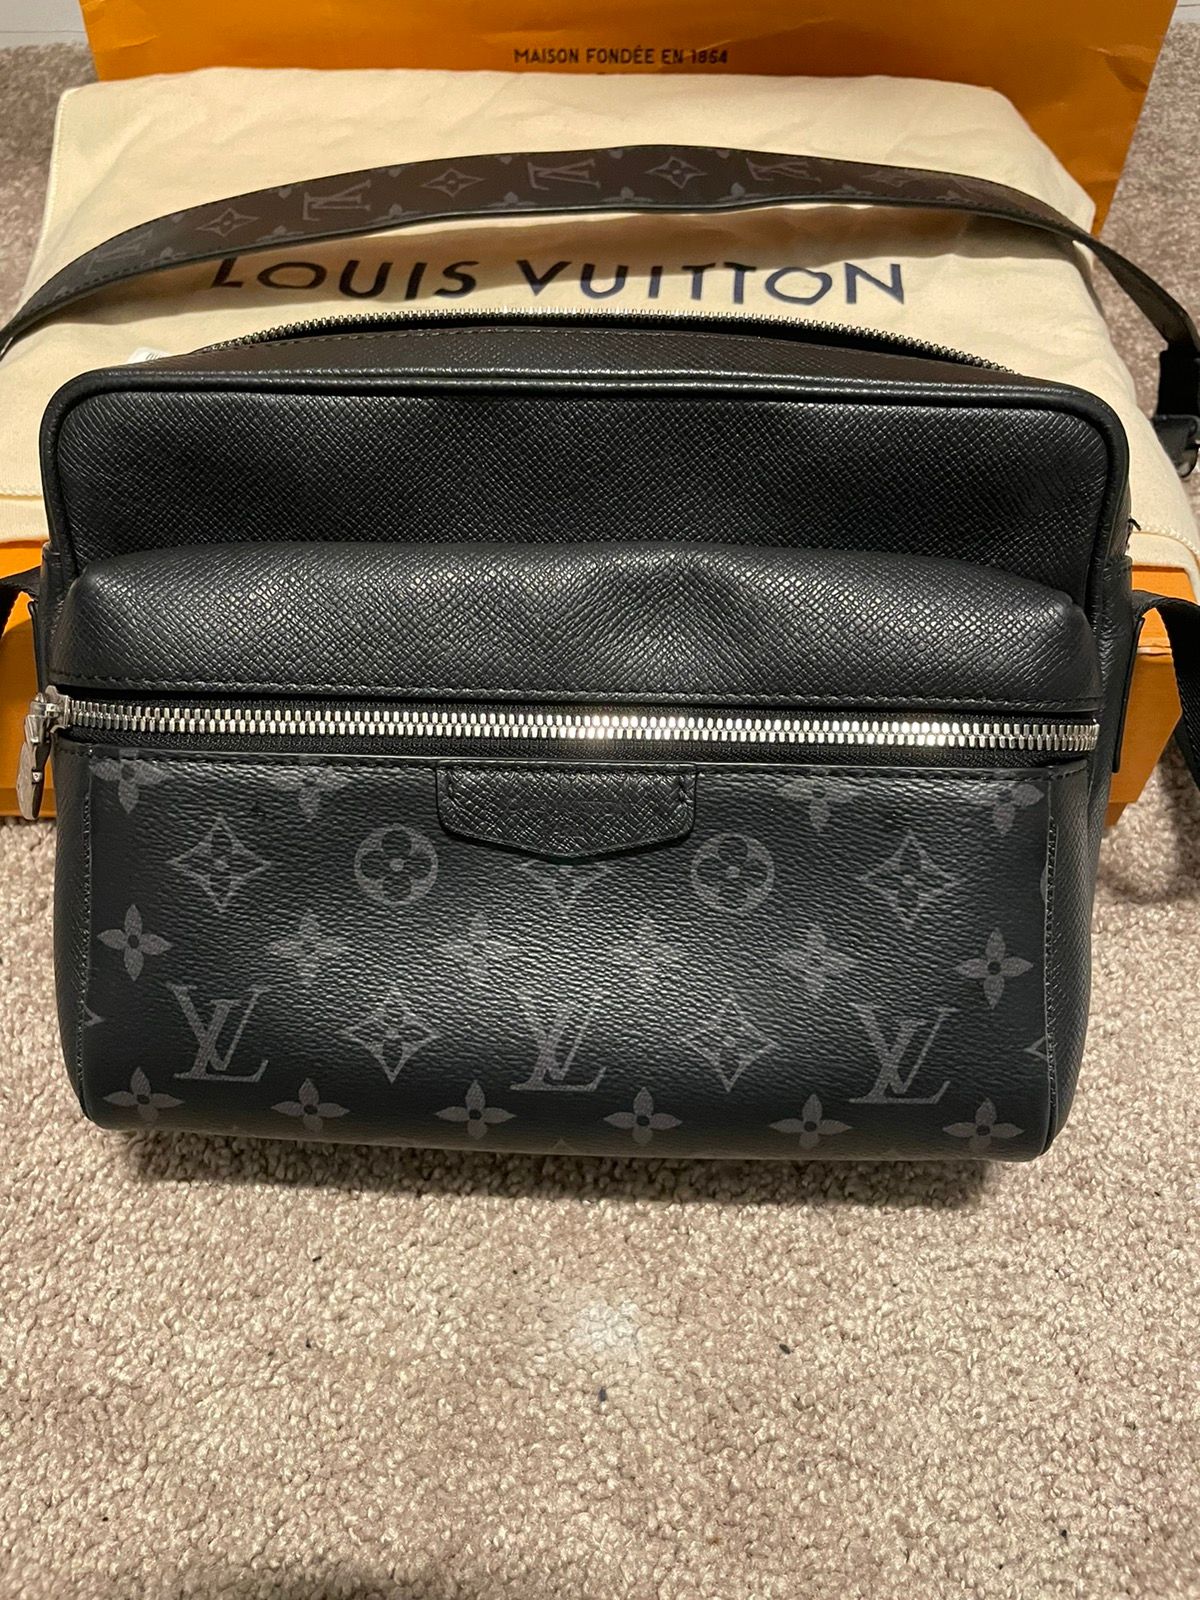 Louis Vuitton Outdoor Messenger (SAC MESSENGER OUTDOOR, M30233)